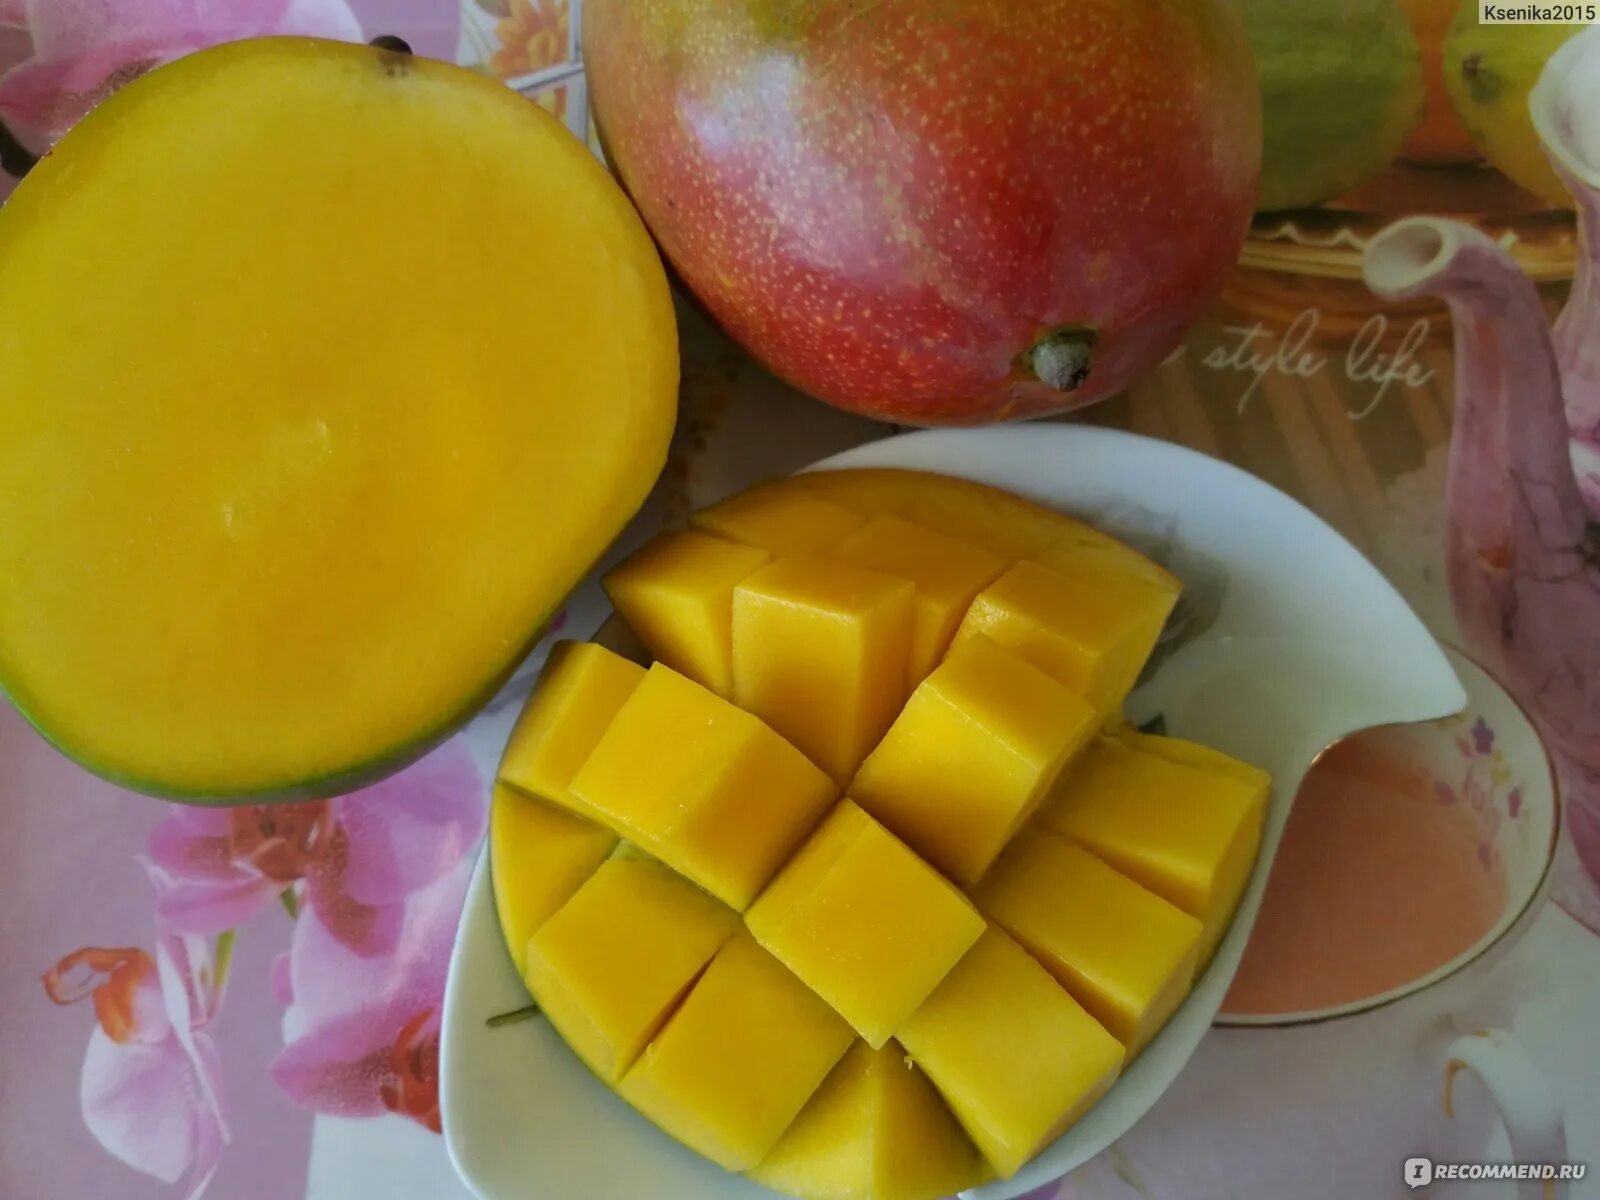 Манго едят с кожурой или нет. Как есть манго в сыром виде. Манго фрукт фото дерева в домашних условиях.